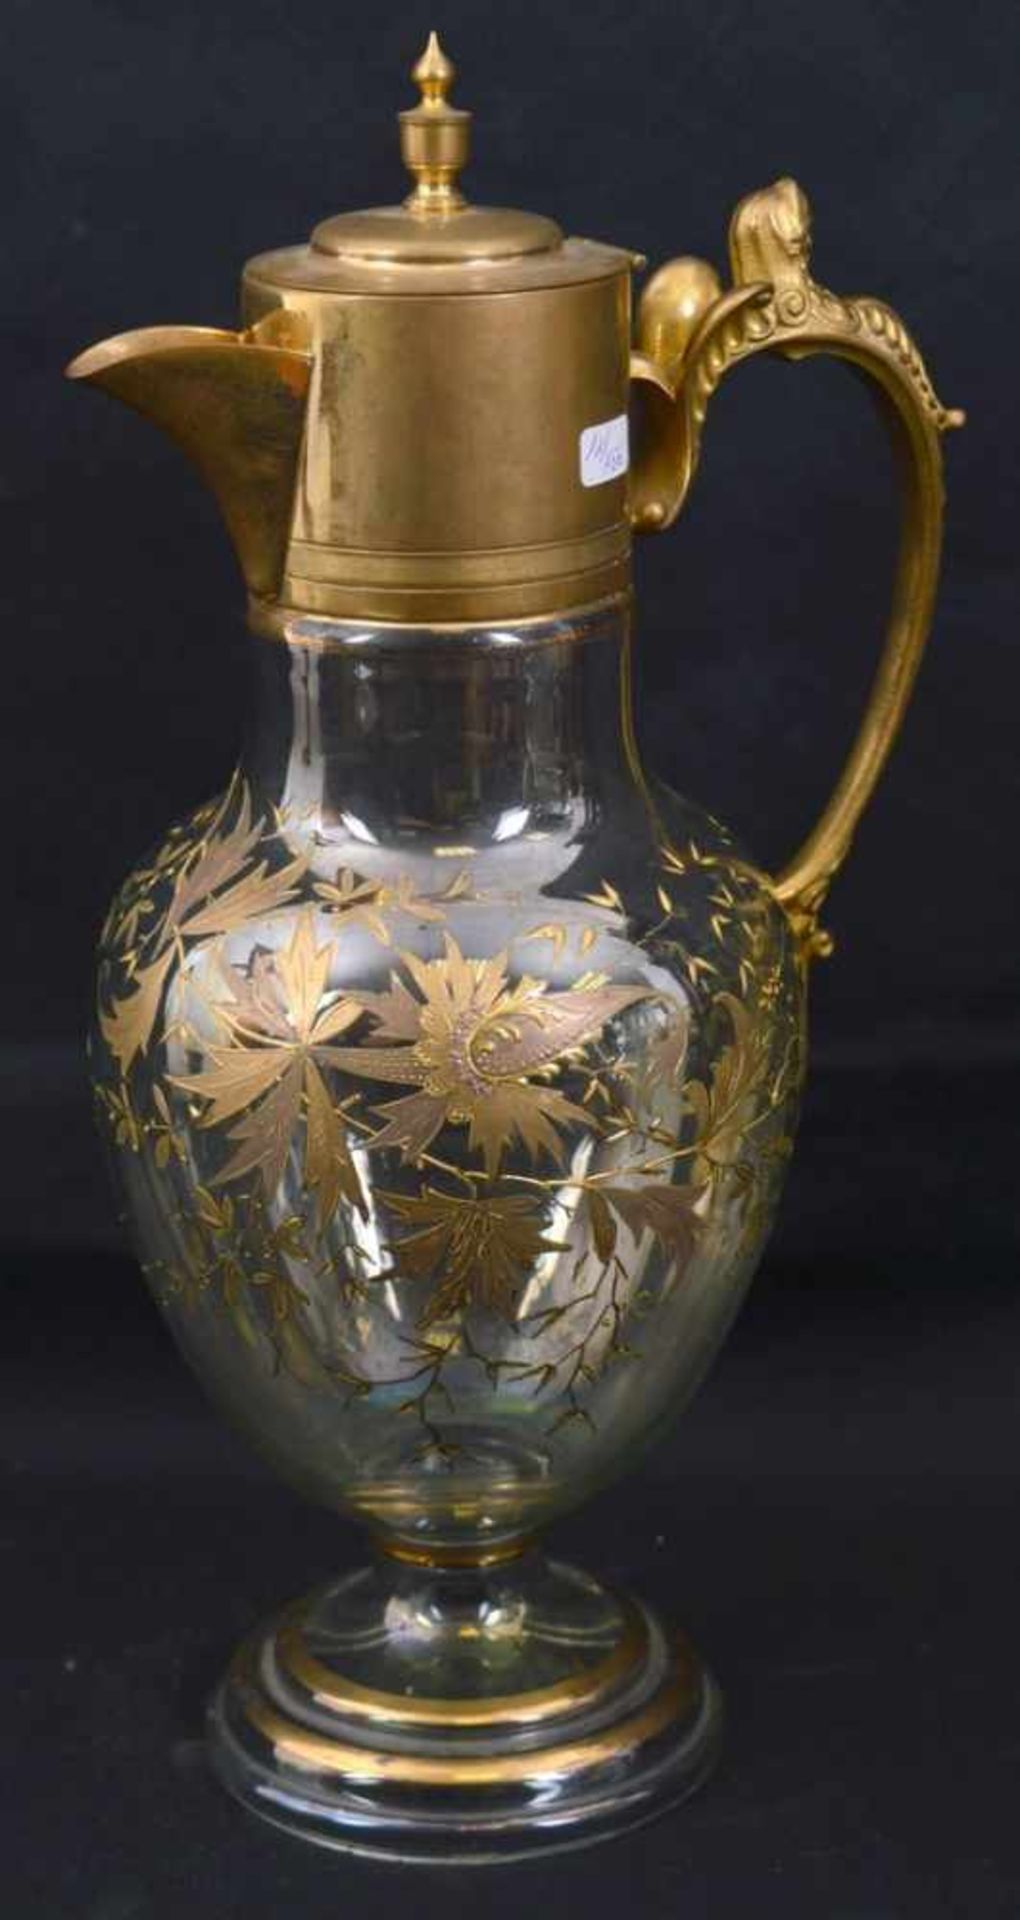 Saftkrug farbl. Glas, runder Fuß, Wandung mit goldenen Blumenranken verziert, Griff und Ausgießer